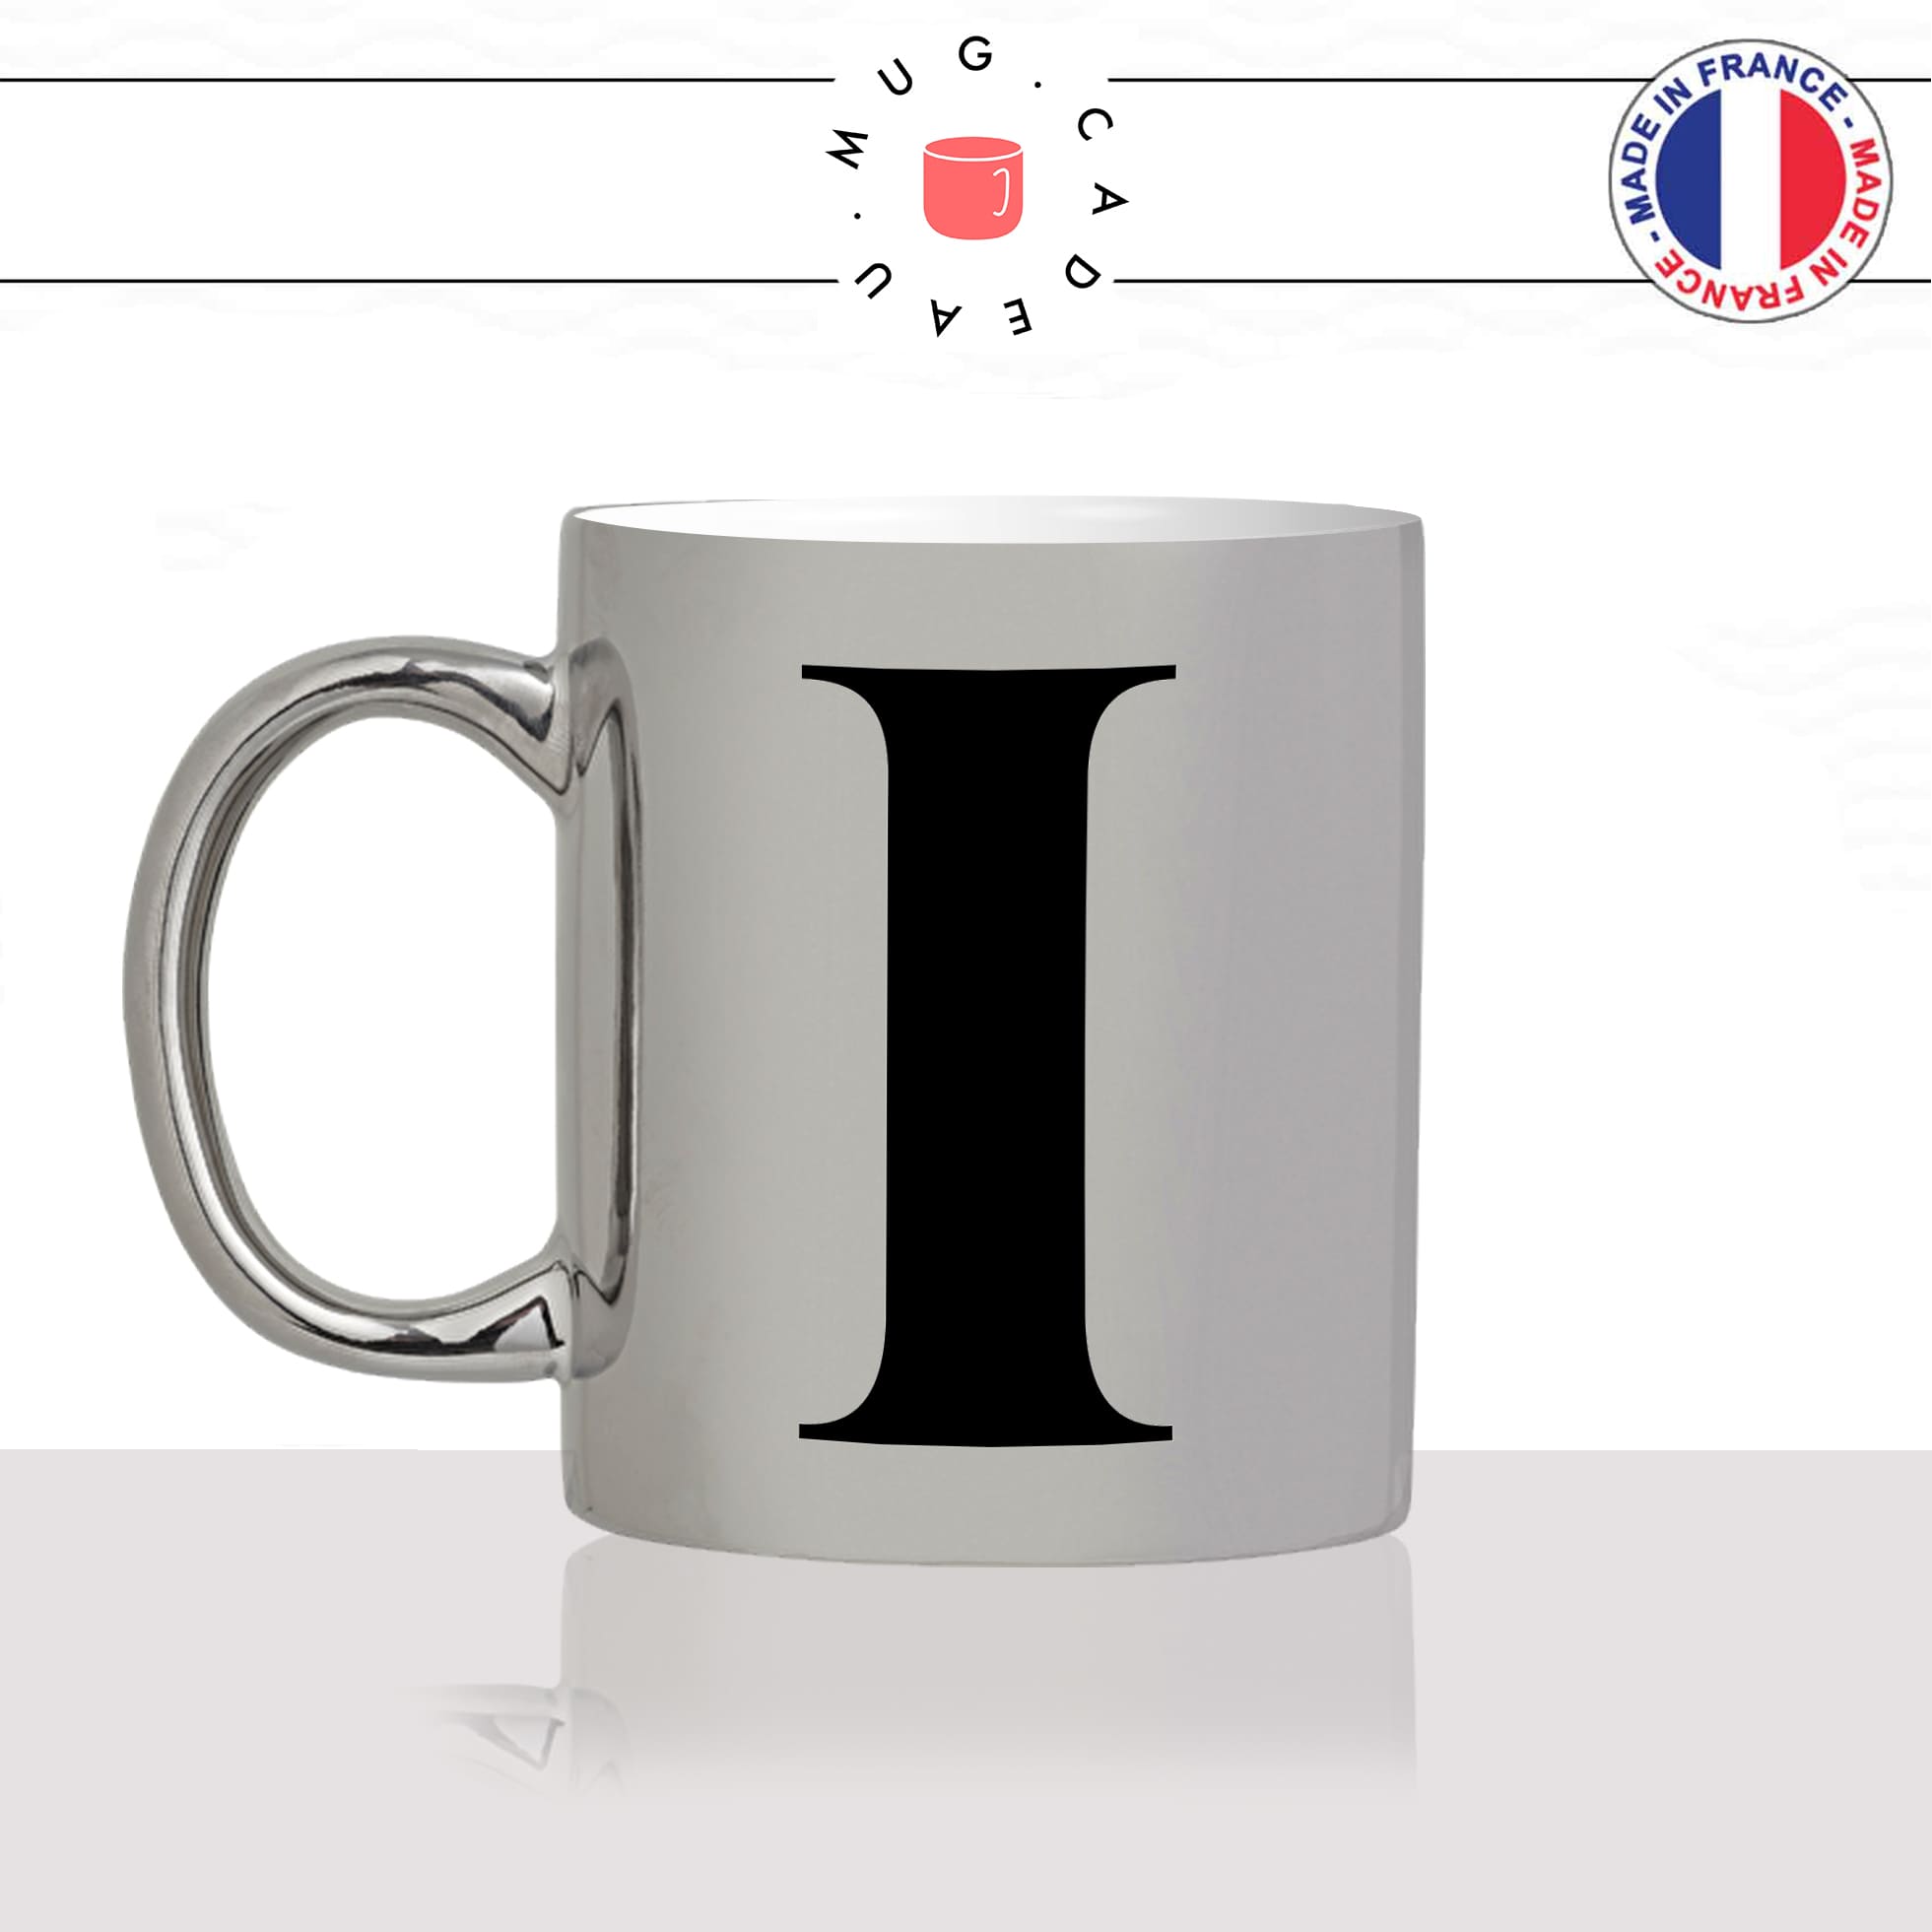 mug-tasse-argent-argenté-silver-initiale-I-i-ivan-illona-iris-femme-homme-majuscule-lettre-collegue-original-idée-cadeau-fun-cool-café-thé